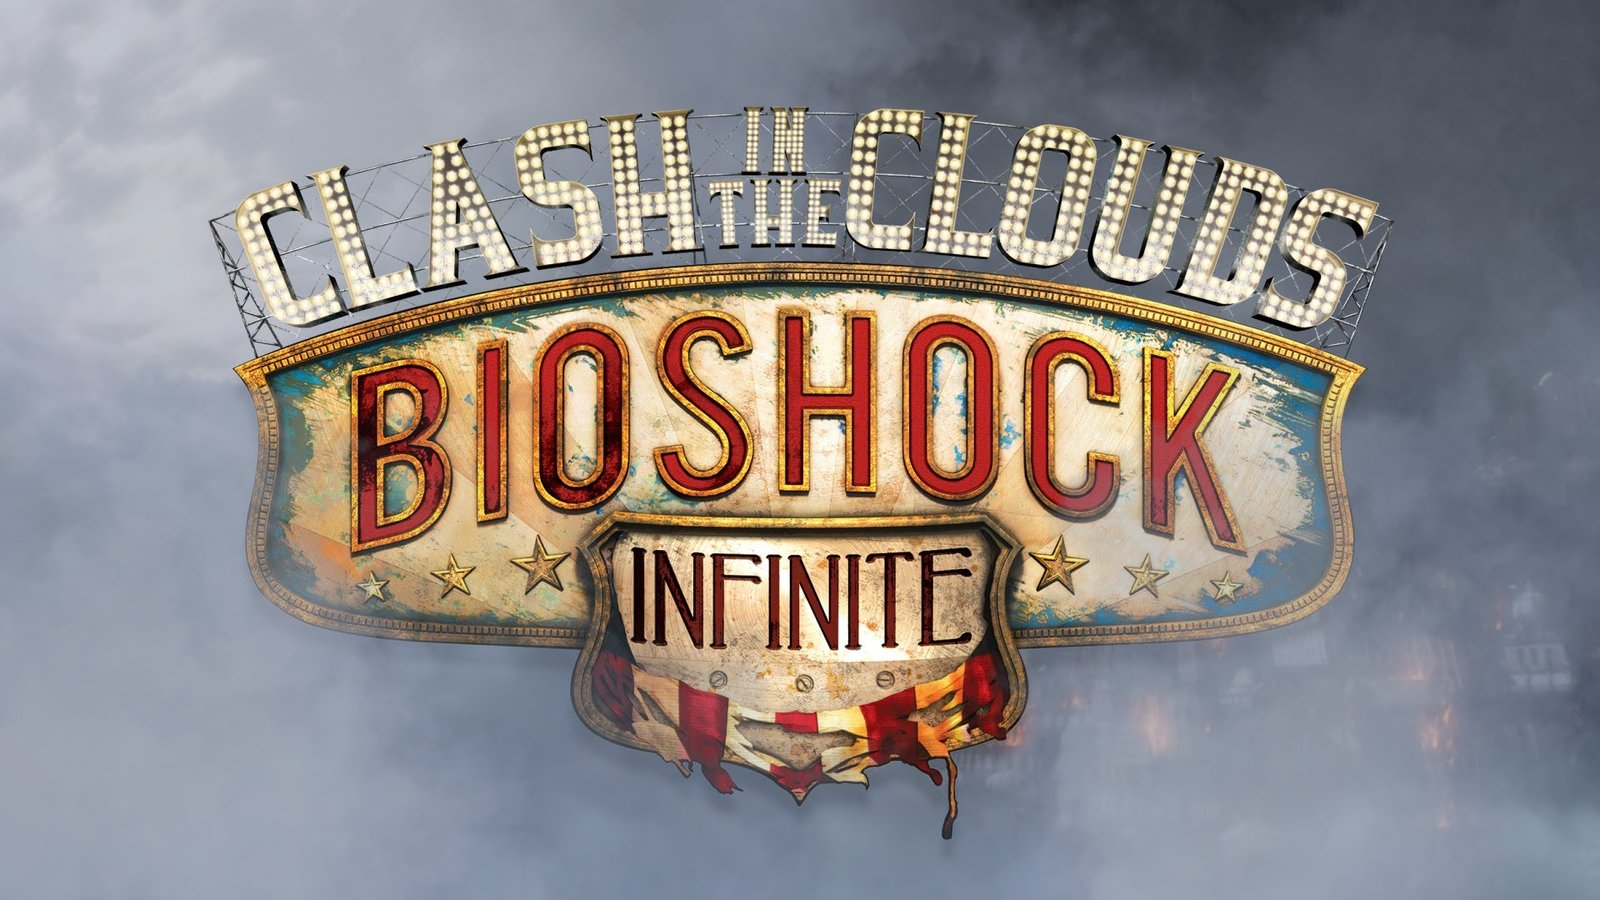 BioShock Infinite: Clash in the Clouds